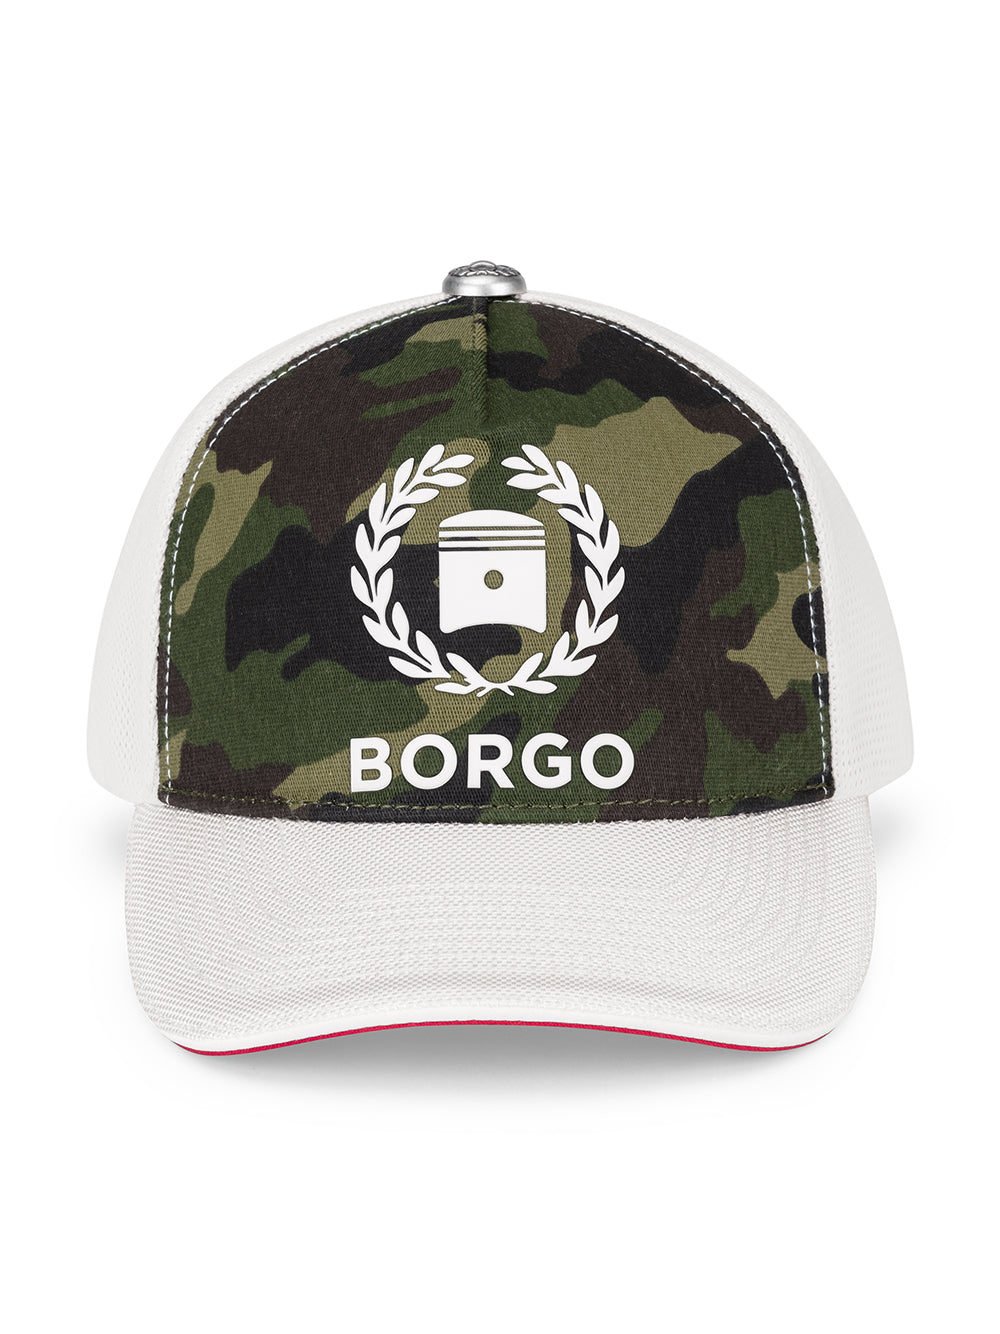 BORGO Americas Mix WCW Cap